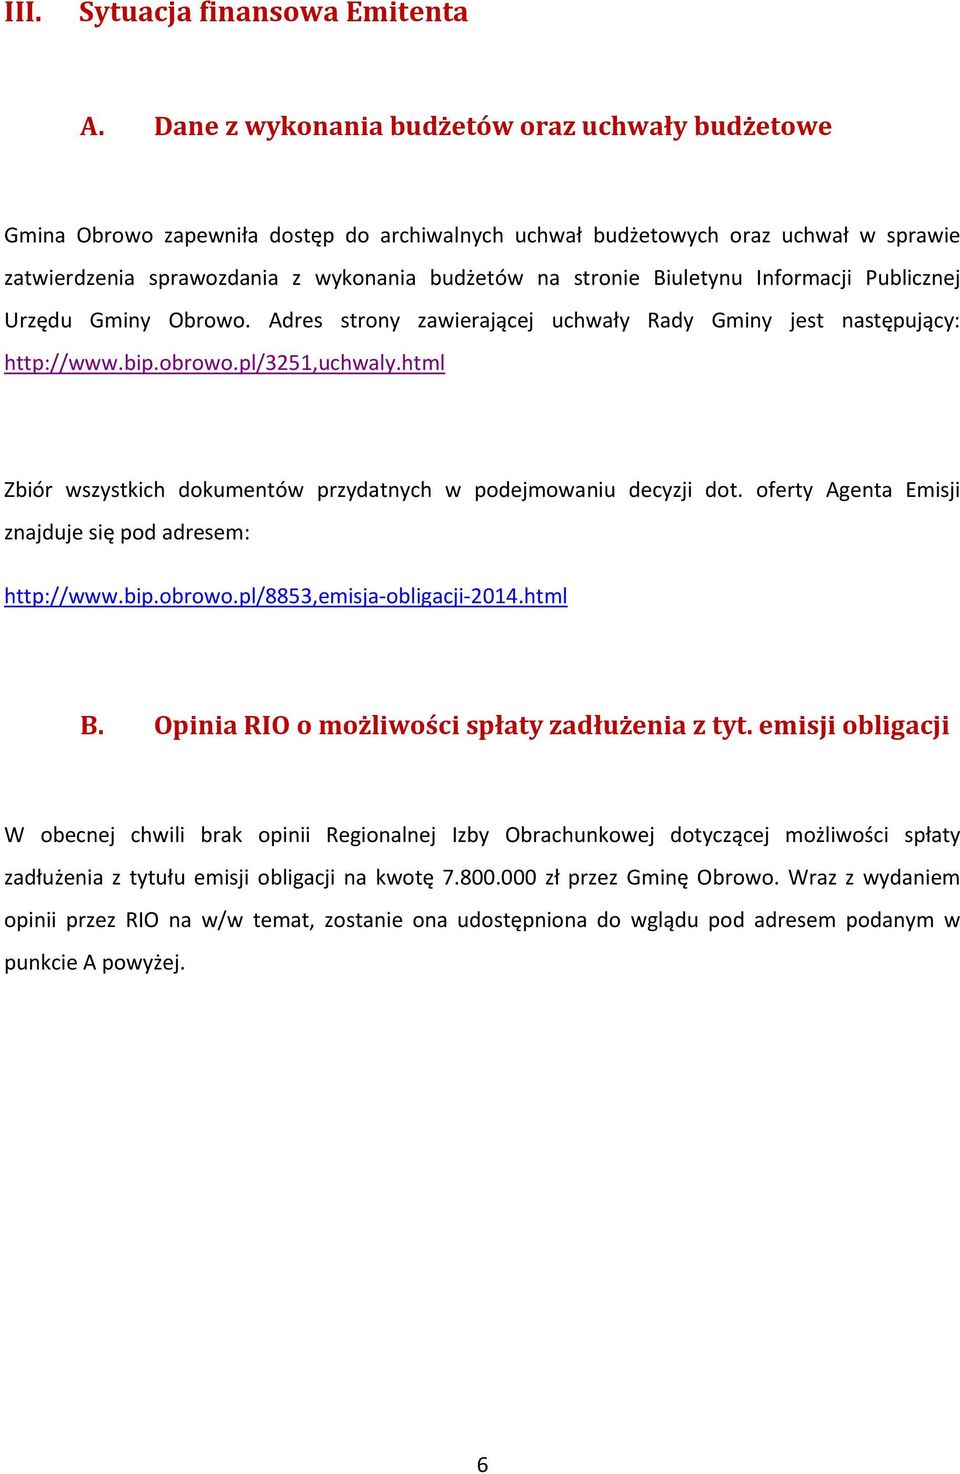 Biuletynu Informacji Publicznej Urzędu Gminy Obrowo. Adres strony zawierającej uchwały Rady Gminy jest następujący: http://www.bip.obrowo.pl/3251,uchwaly.